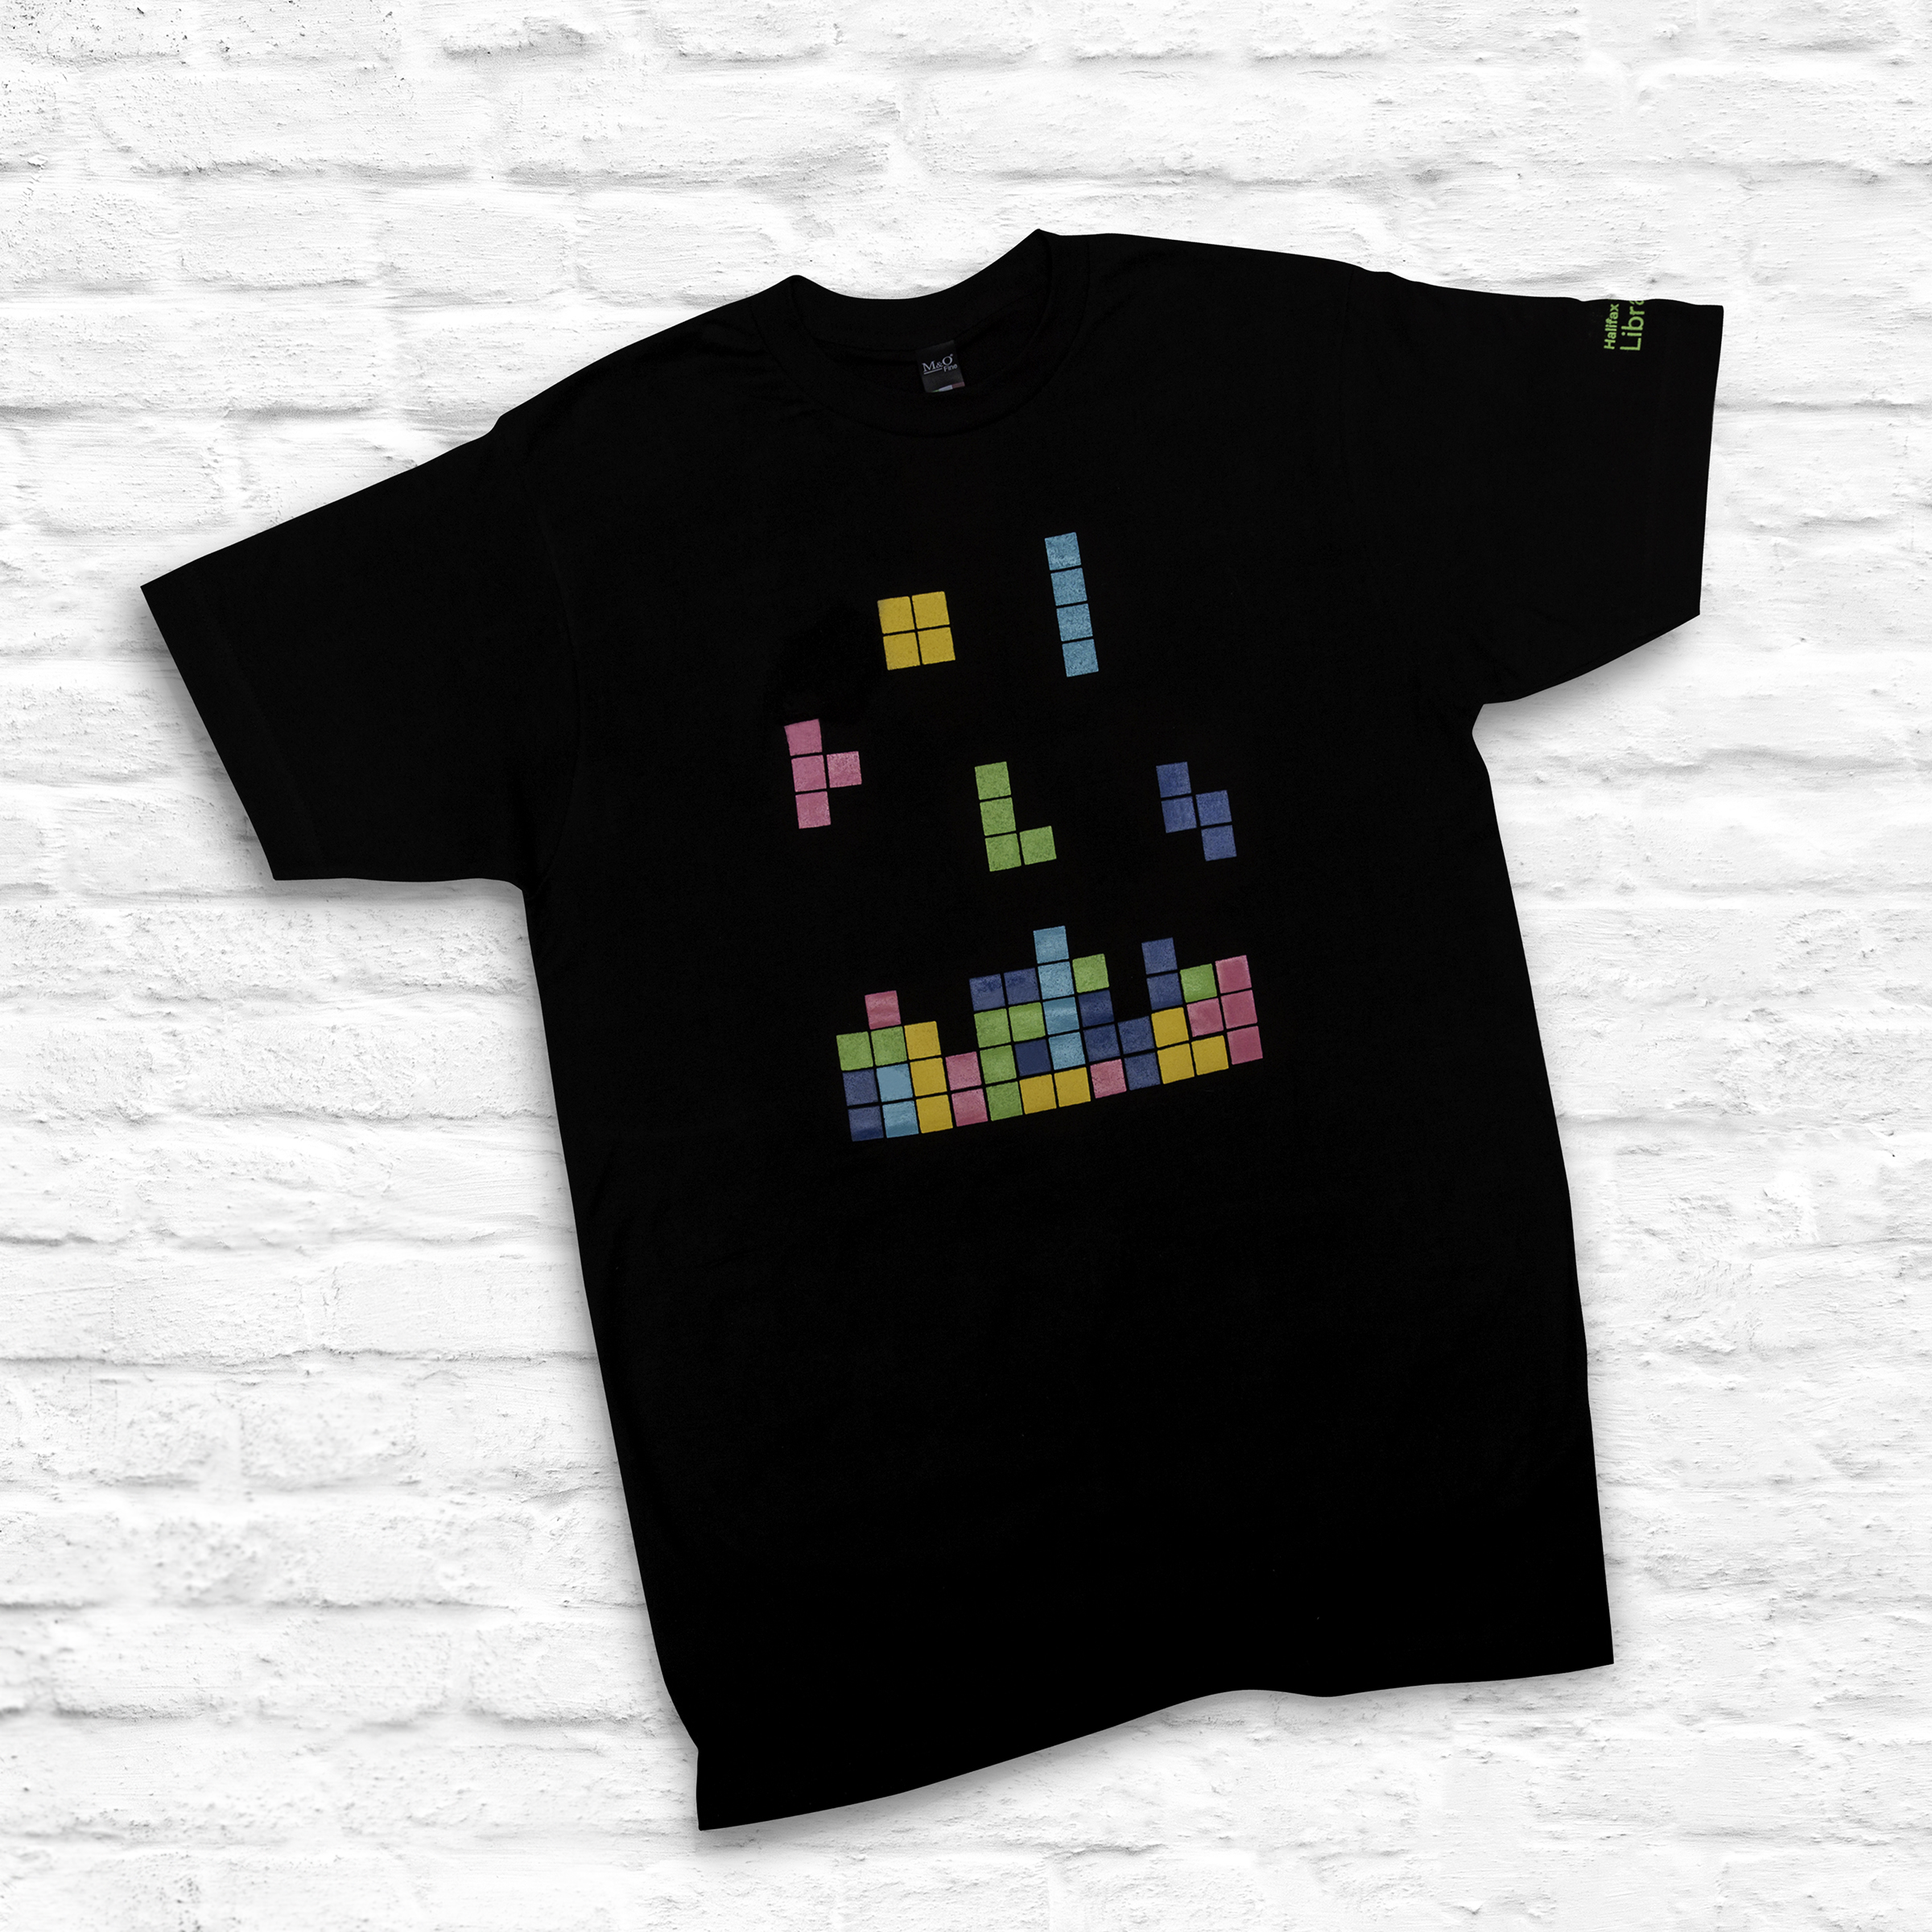 Library “Tetris” T-Shirt – Halifax Public Libraries